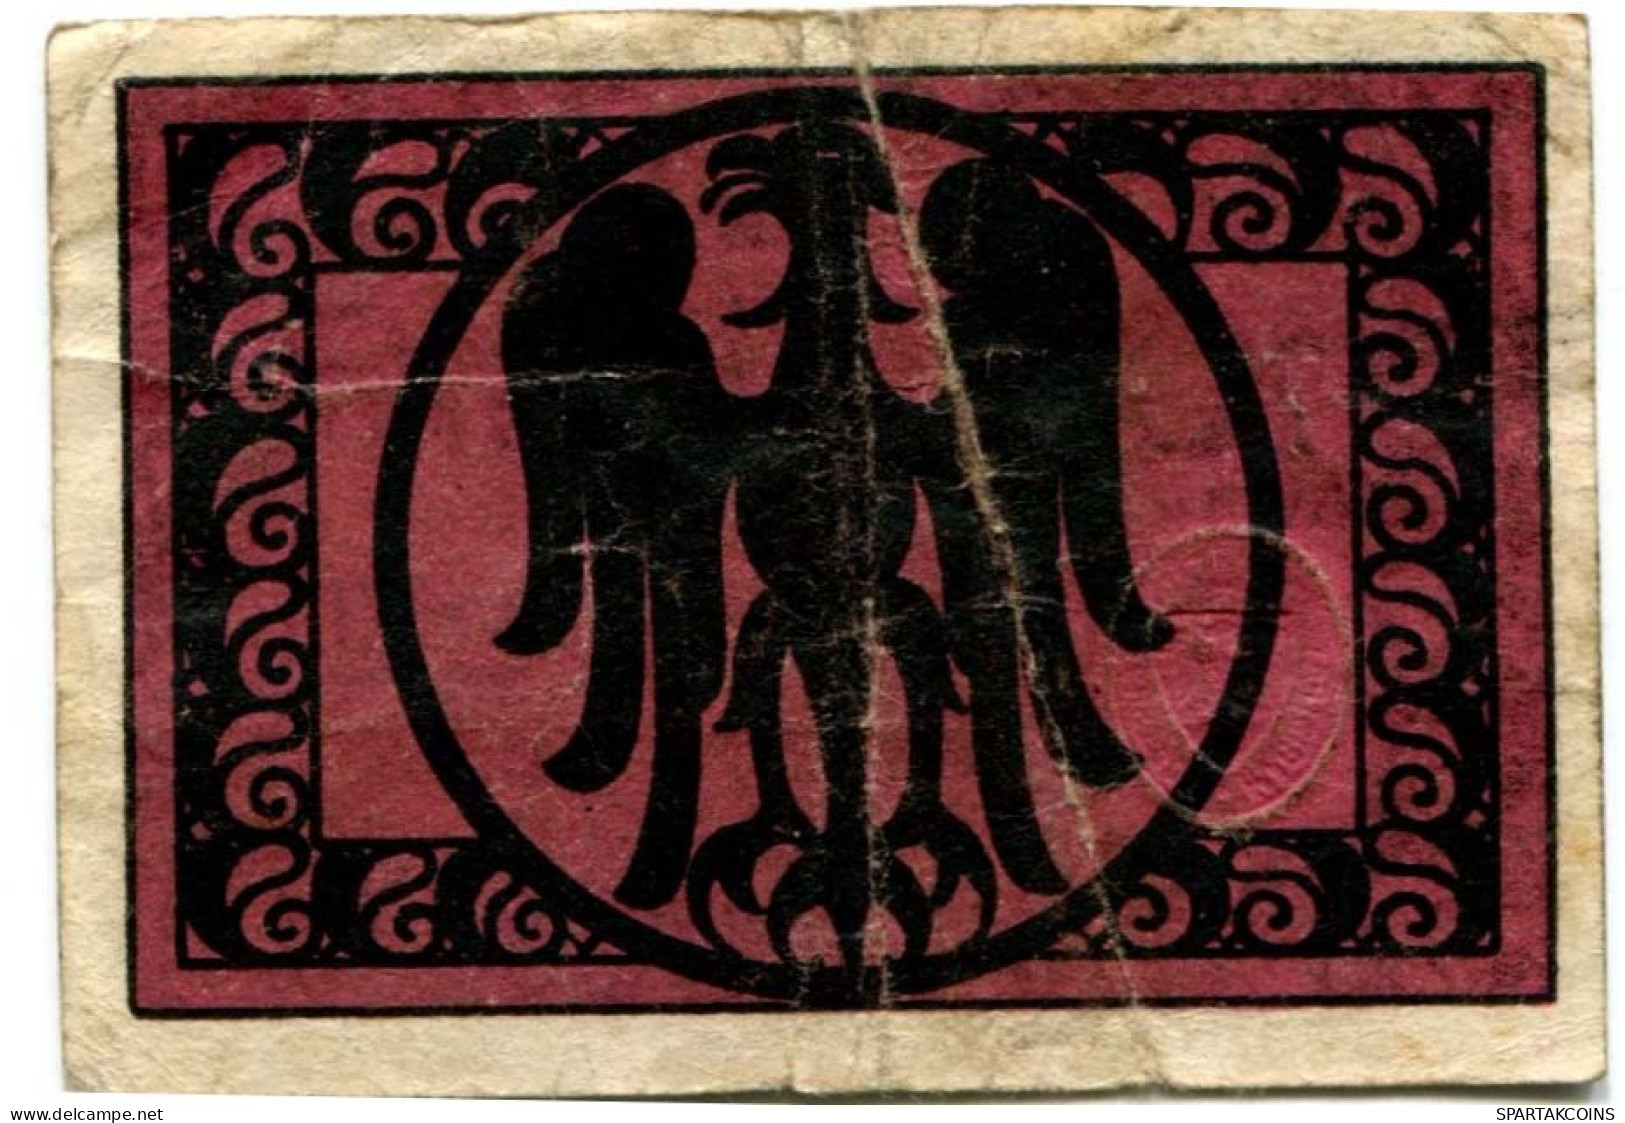 10 PFENNIG 1920 Stadt ARNSTADT Thuringia DEUTSCHLAND Notgeld Papiergeld Banknote #PL702 - [11] Lokale Uitgaven